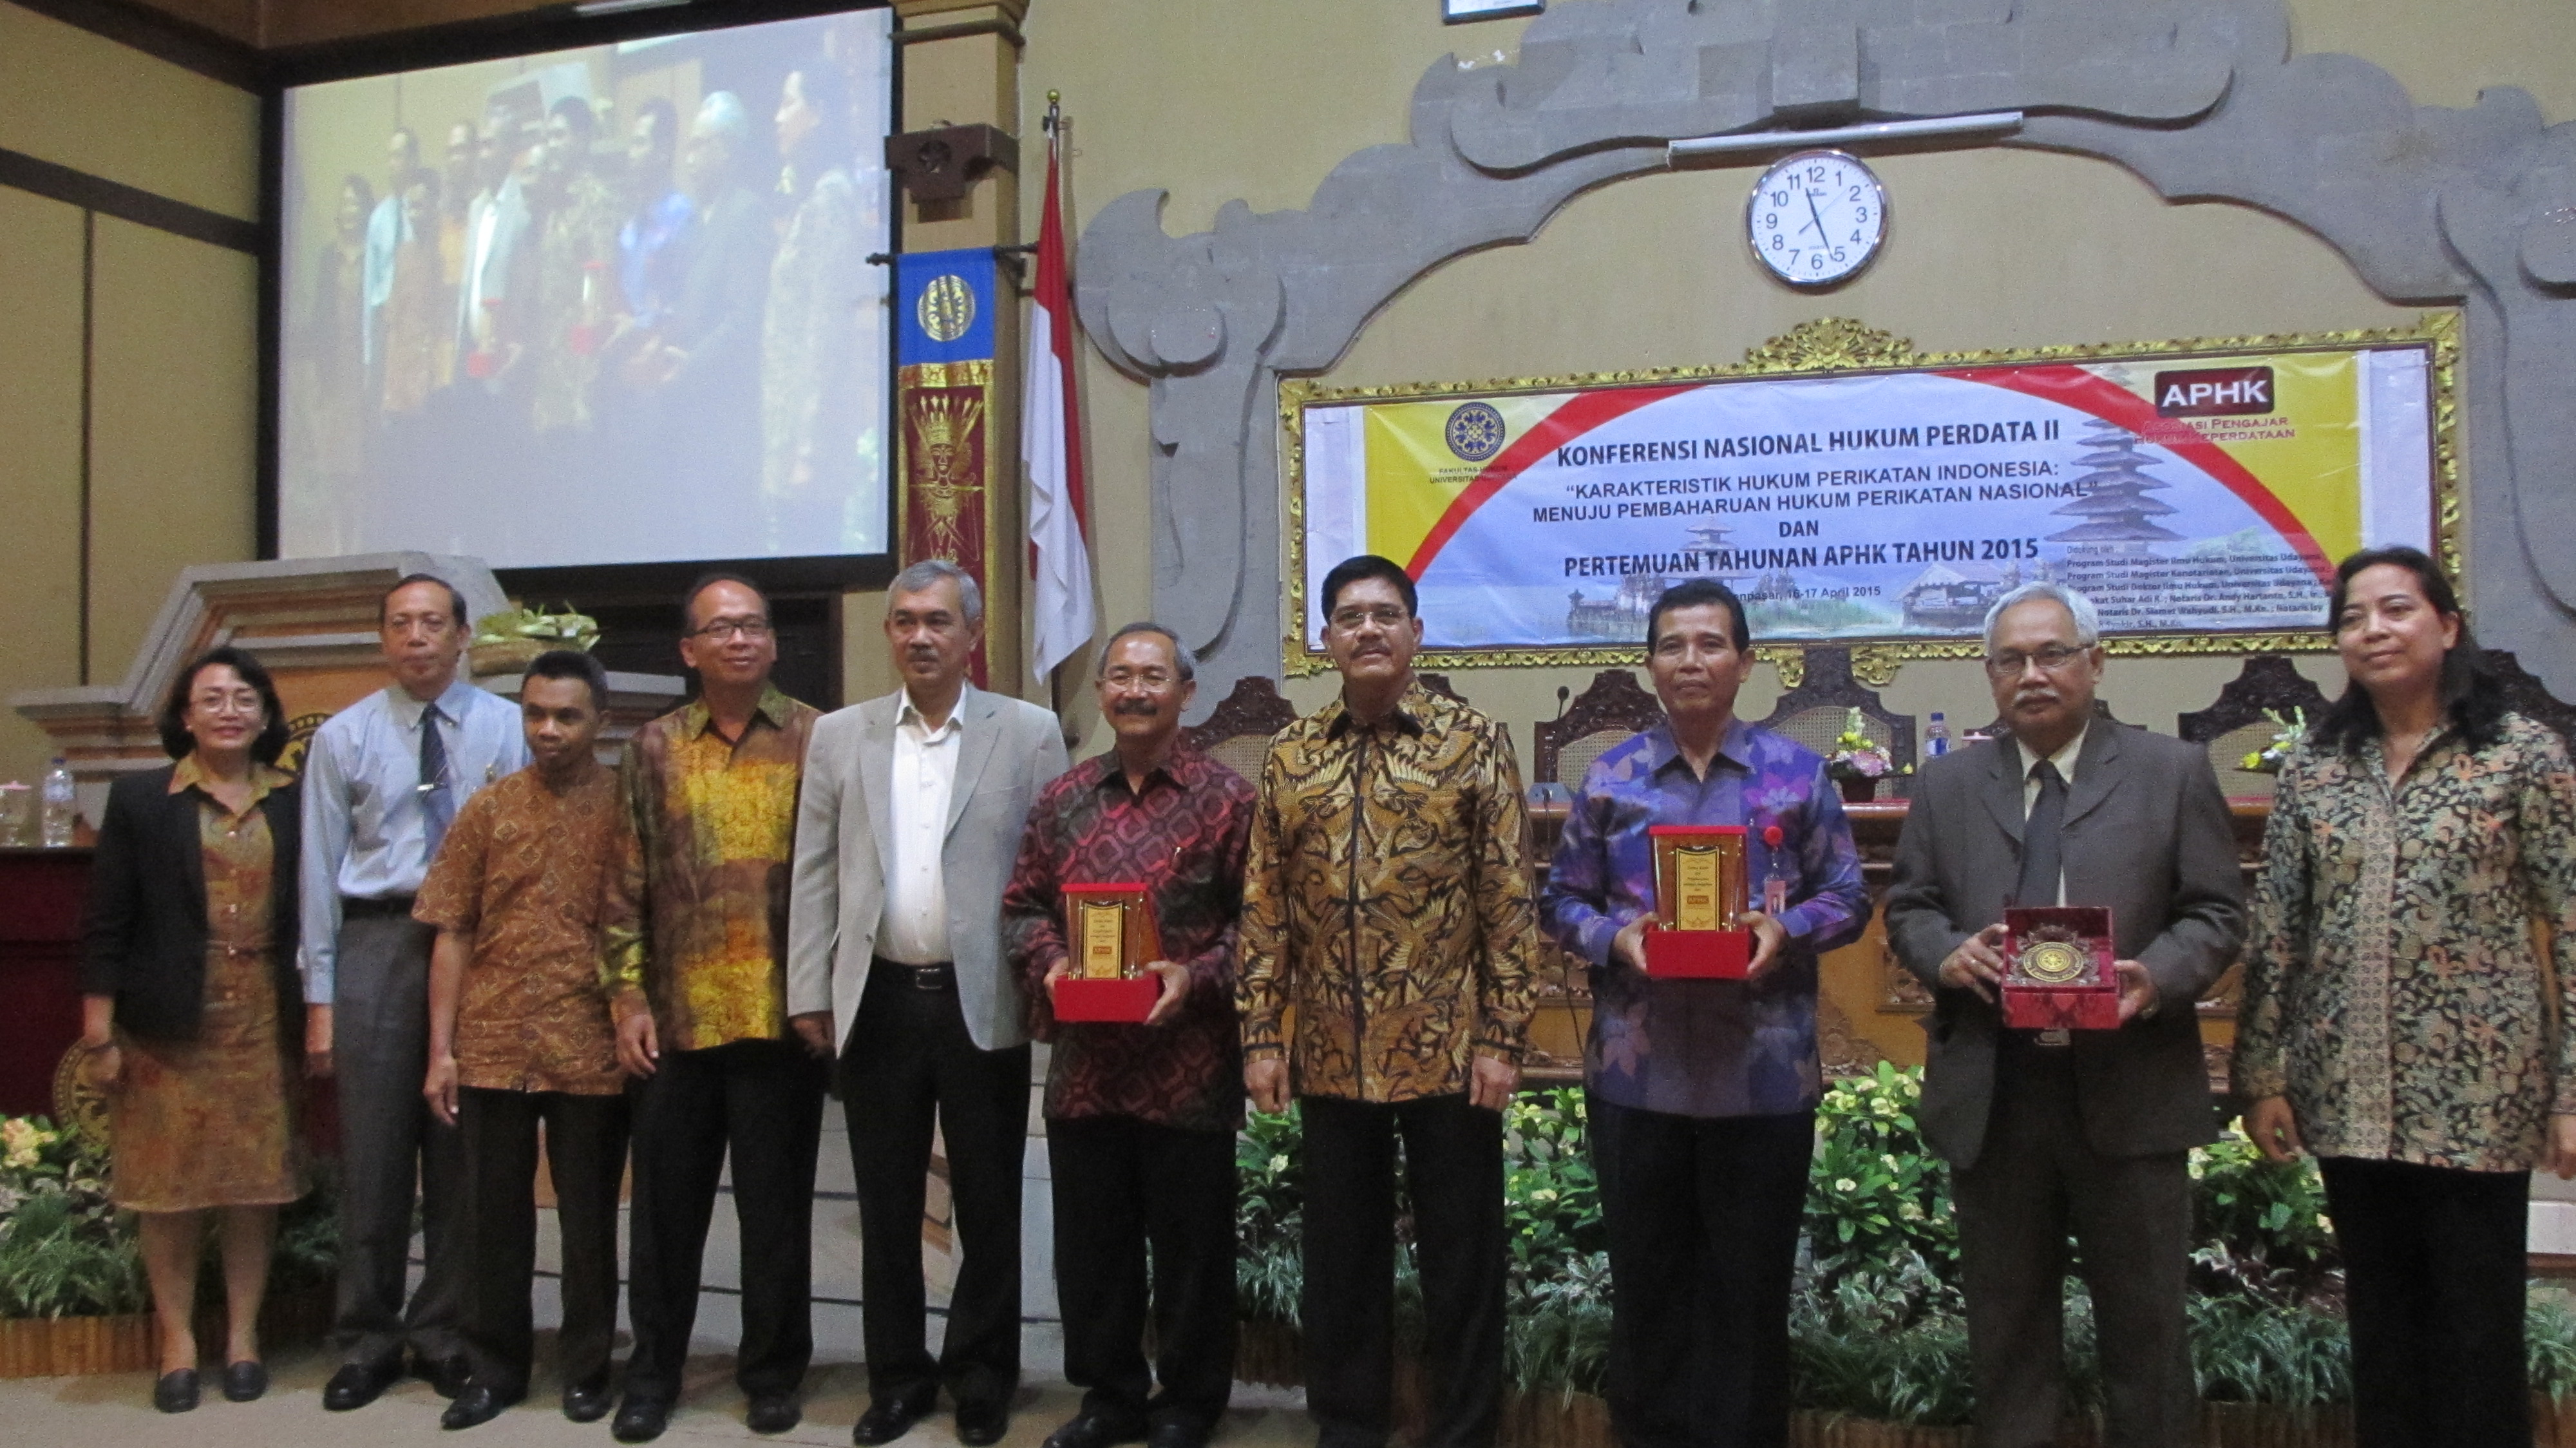 Ketua MA M Hatta Ali (Keempat dari Kanan) usai memberi sambutan Konferensi Hukum Perdata II di FH Universitas Udayana, Bali, Kamis (16/4). Foto: RIA.